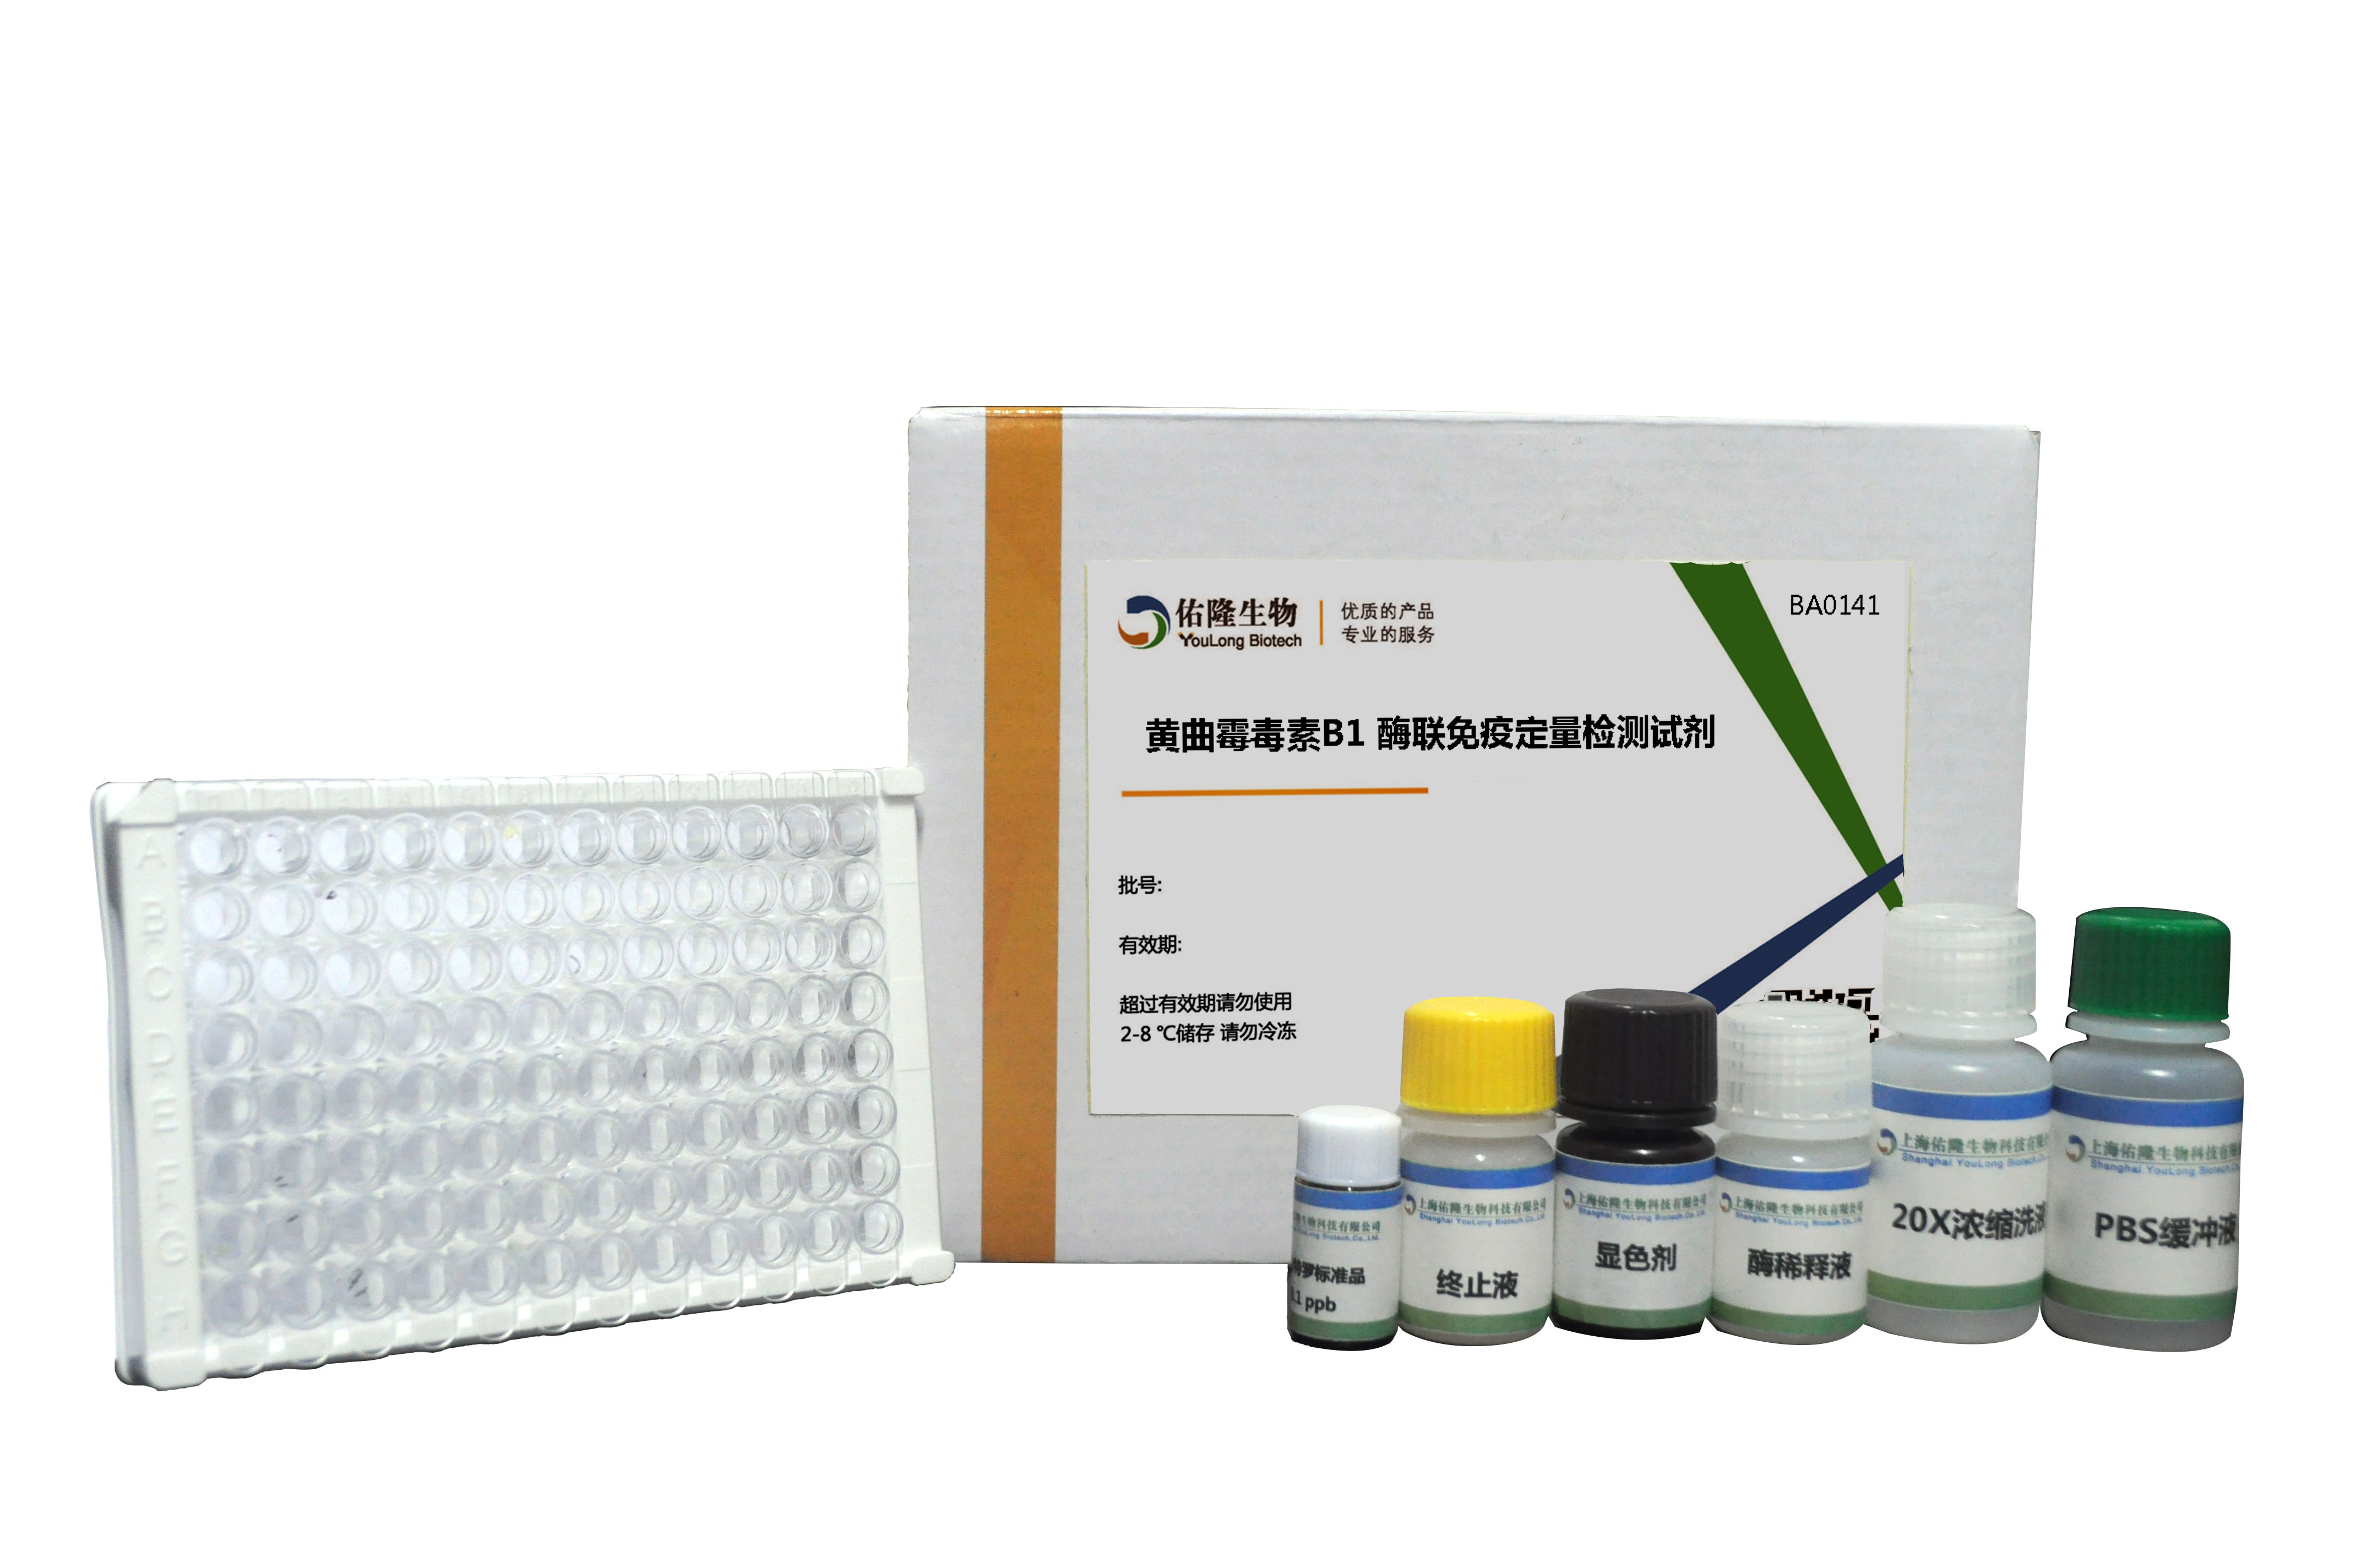 黄曲霉毒素B1(AFB1)酶联免疫定量检测试剂盒